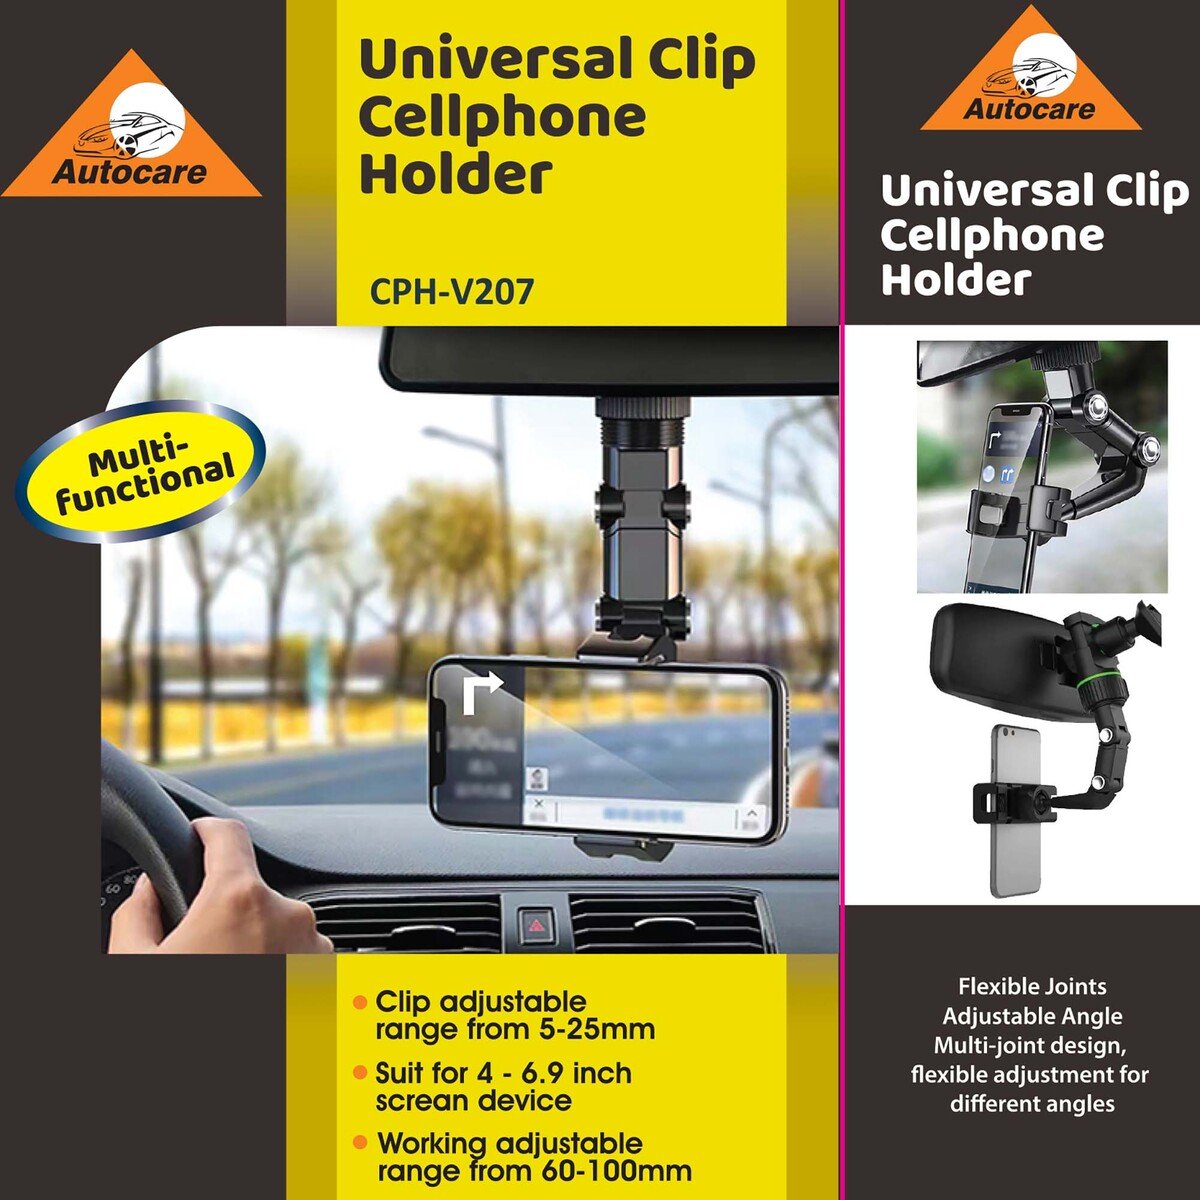 Auto Care Universal Clip Mobile Holder, Black, CPH-V207